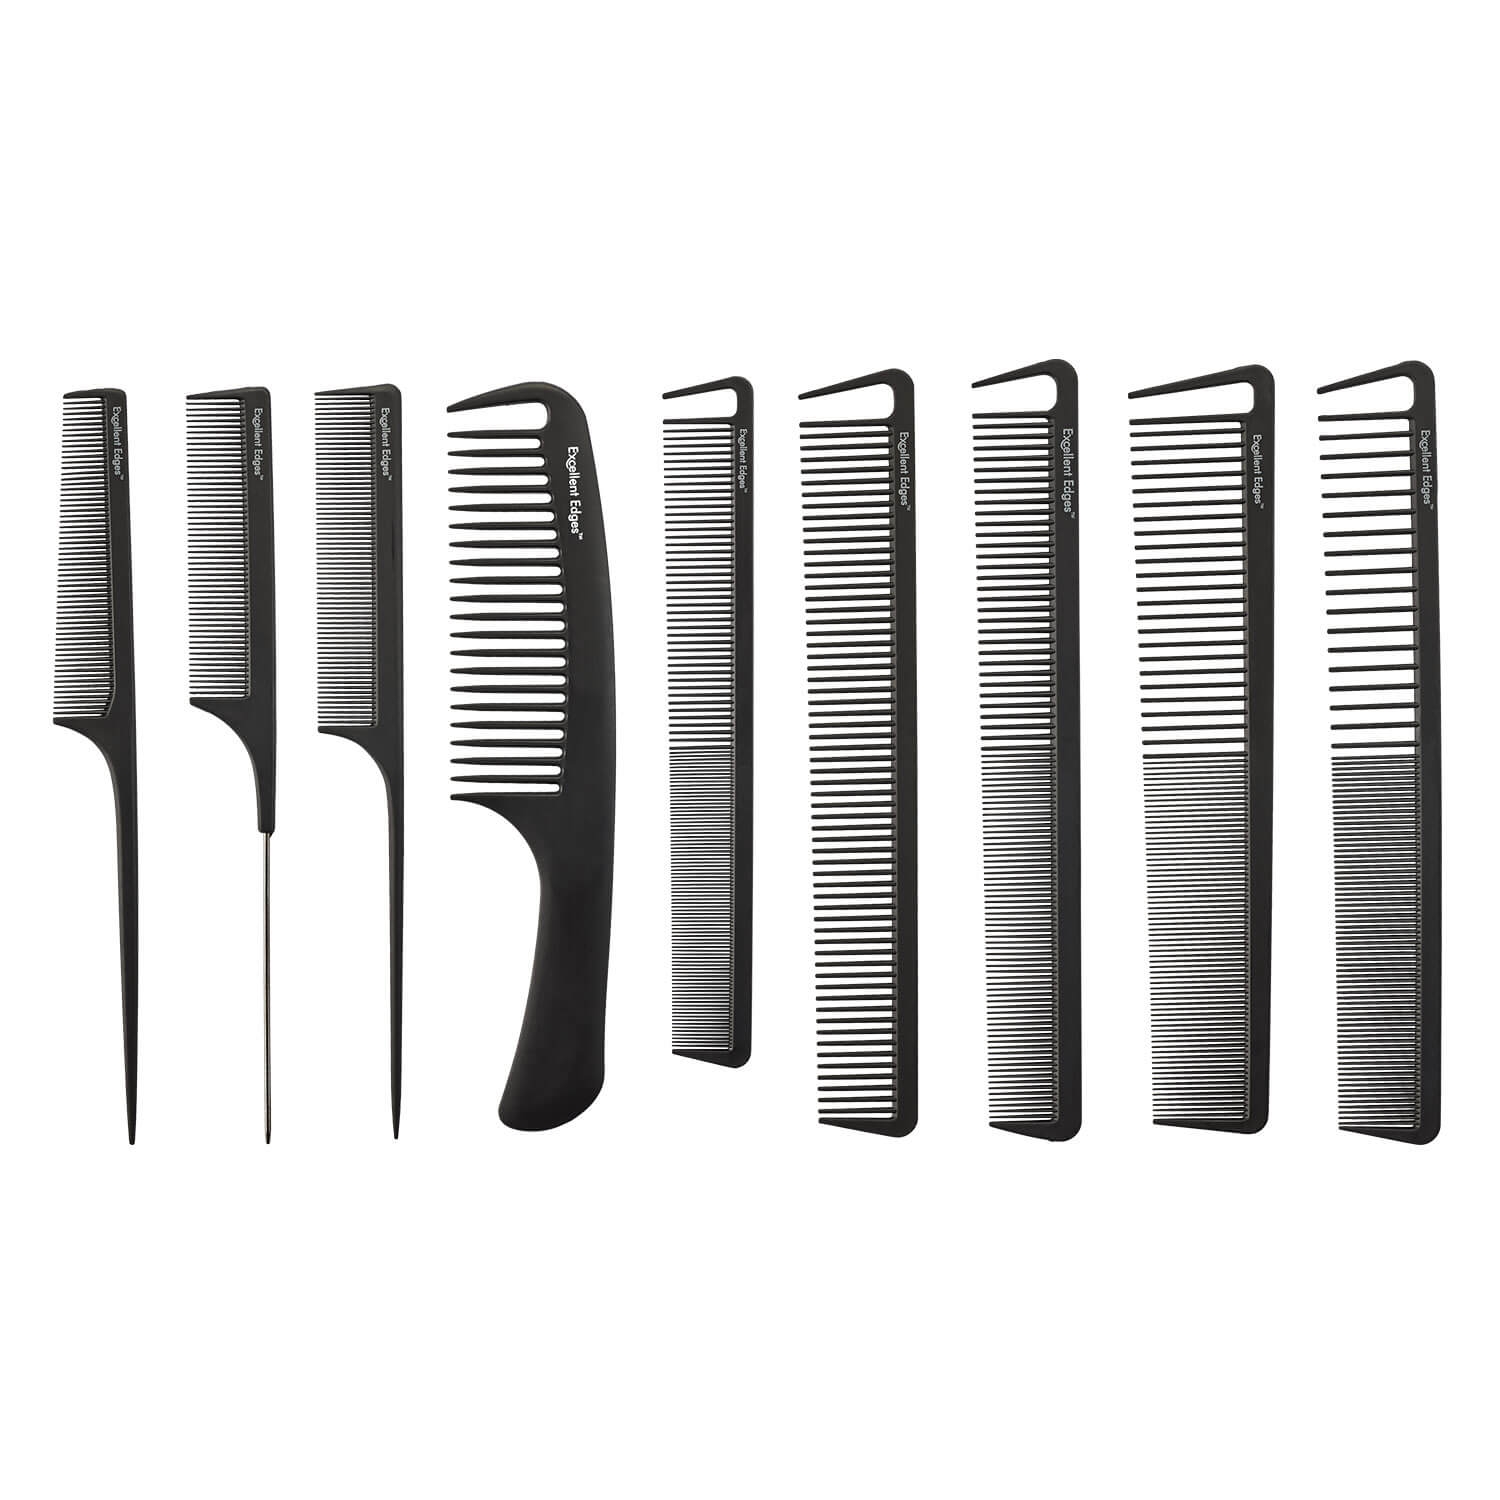 Produktbild von HH Simonsen Accessoires - Comb Set